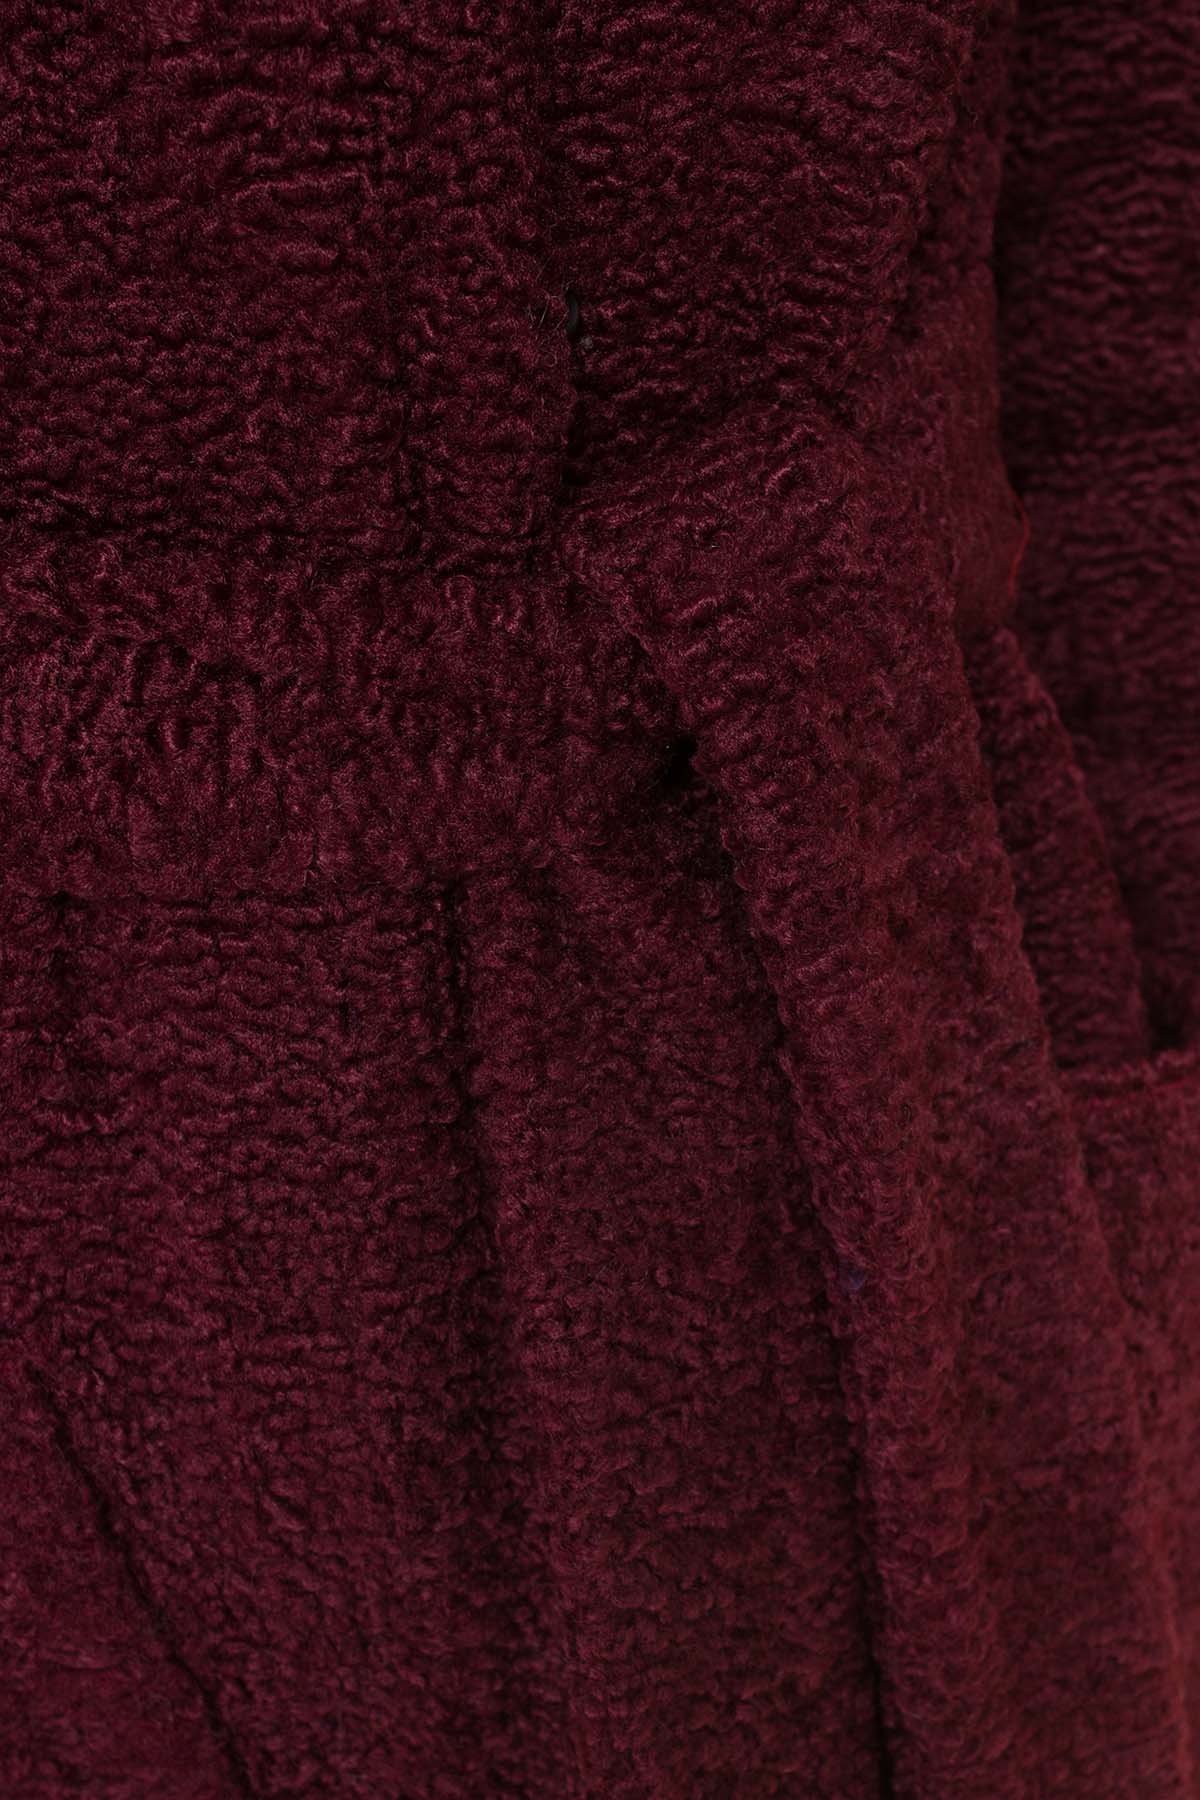 Пальто из искусственного каракуля Анита макси 6012 АРТ. 40974 Цвет: Марсала - фото 6, интернет магазин tm-modus.ru